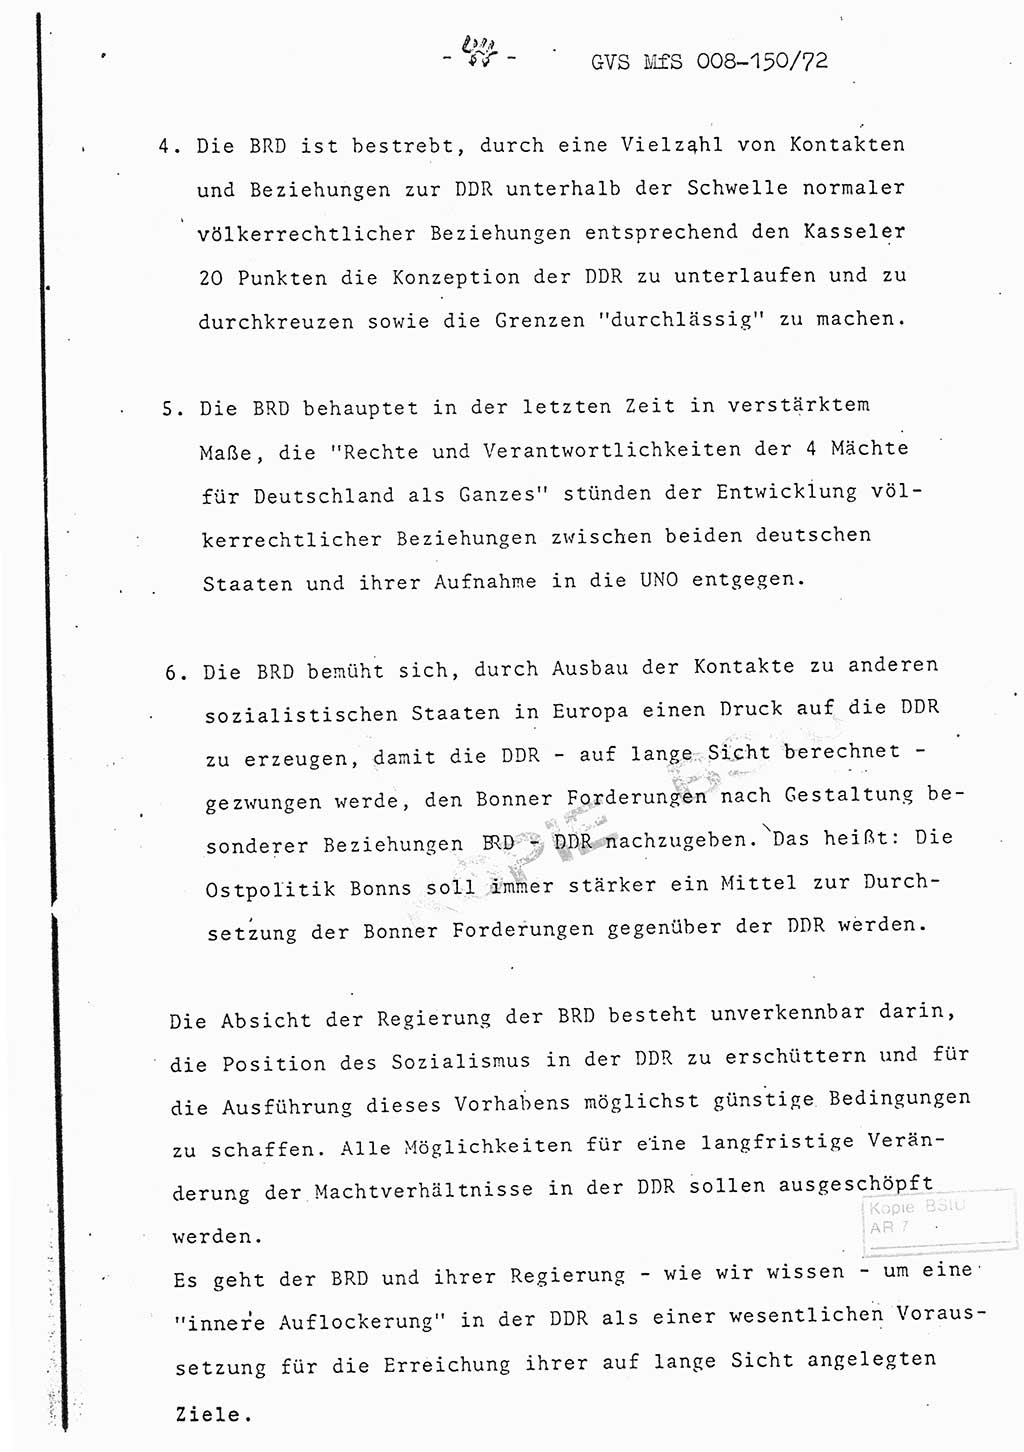 Referat (Entwurf) des Genossen Minister (Generaloberst Erich Mielke) auf der Dienstkonferenz 1972, Ministerium für Staatssicherheit (MfS) [Deutsche Demokratische Republik (DDR)], Der Minister, Geheime Verschlußsache (GVS) 008-150/72, Berlin 25.2.1972, Seite 44 (Ref. Entw. DK MfS DDR Min. GVS 008-150/72 1972, S. 44)